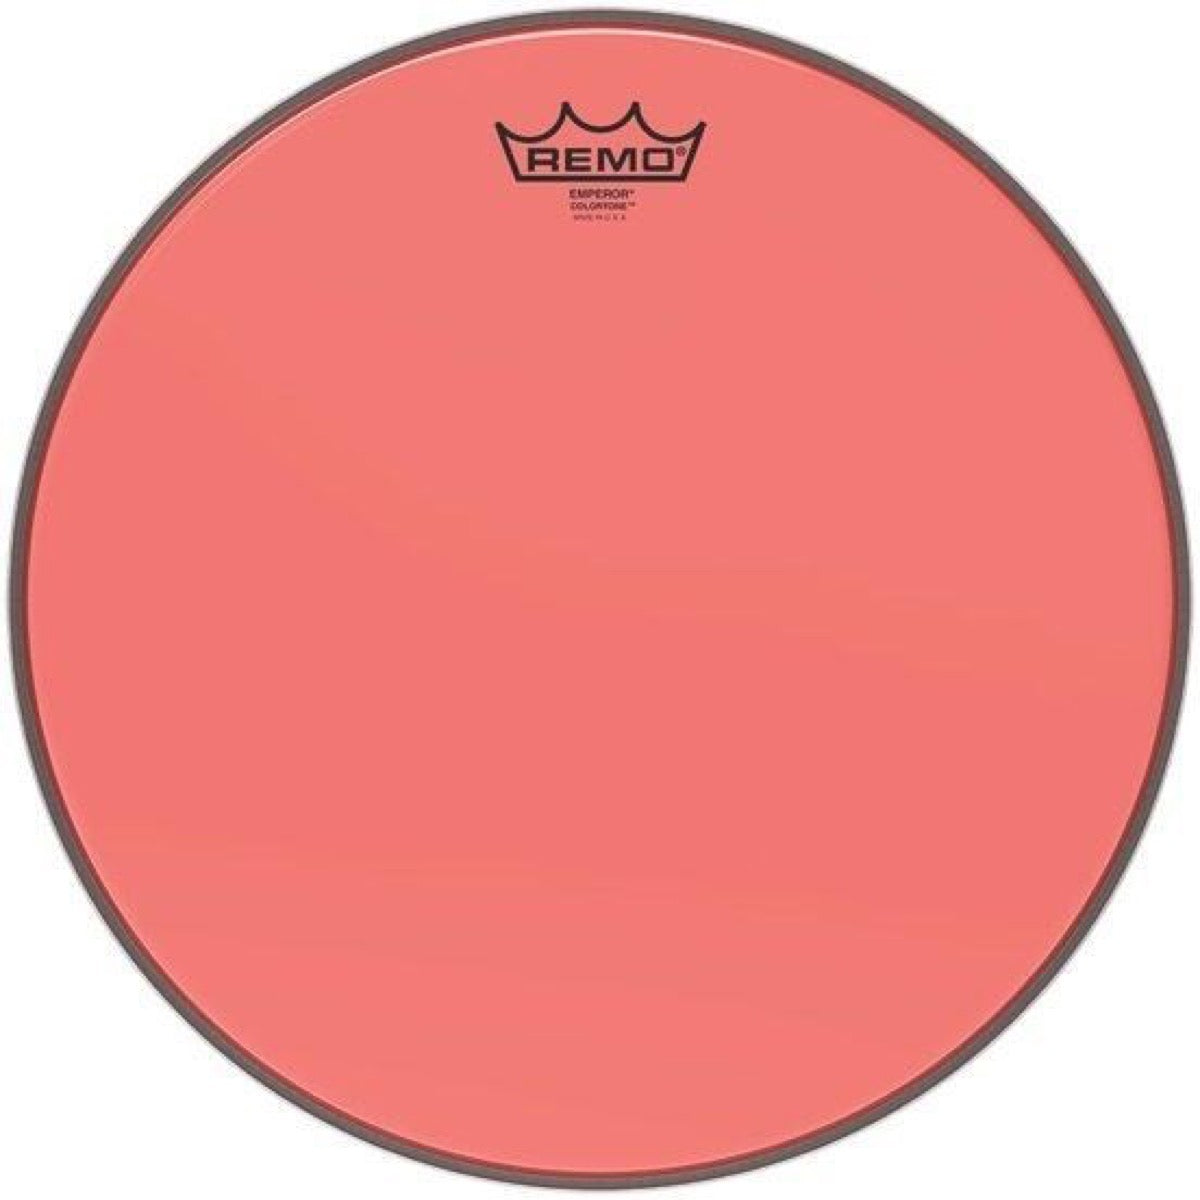 Remo Emperor Colortone Drumhead, Red, 12 Inch